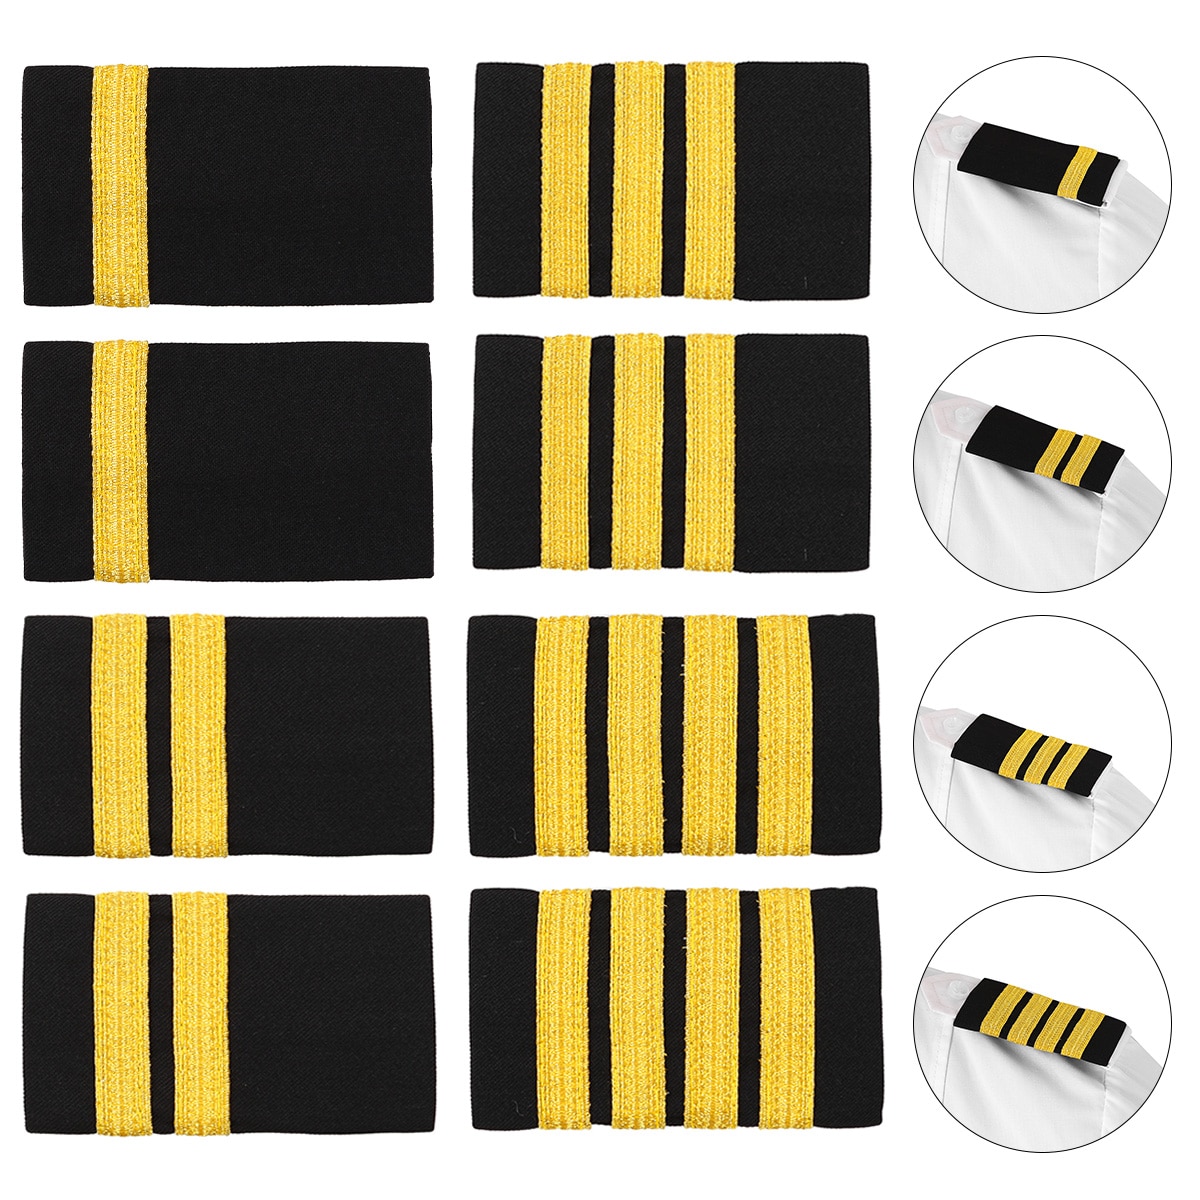 1 paar Traditionellen Uniform Dekor Epauletten Professionelle Pilot Shirt Epauletten DIY Gold Streifen Schulter Bord Abzeichen für Kleidung